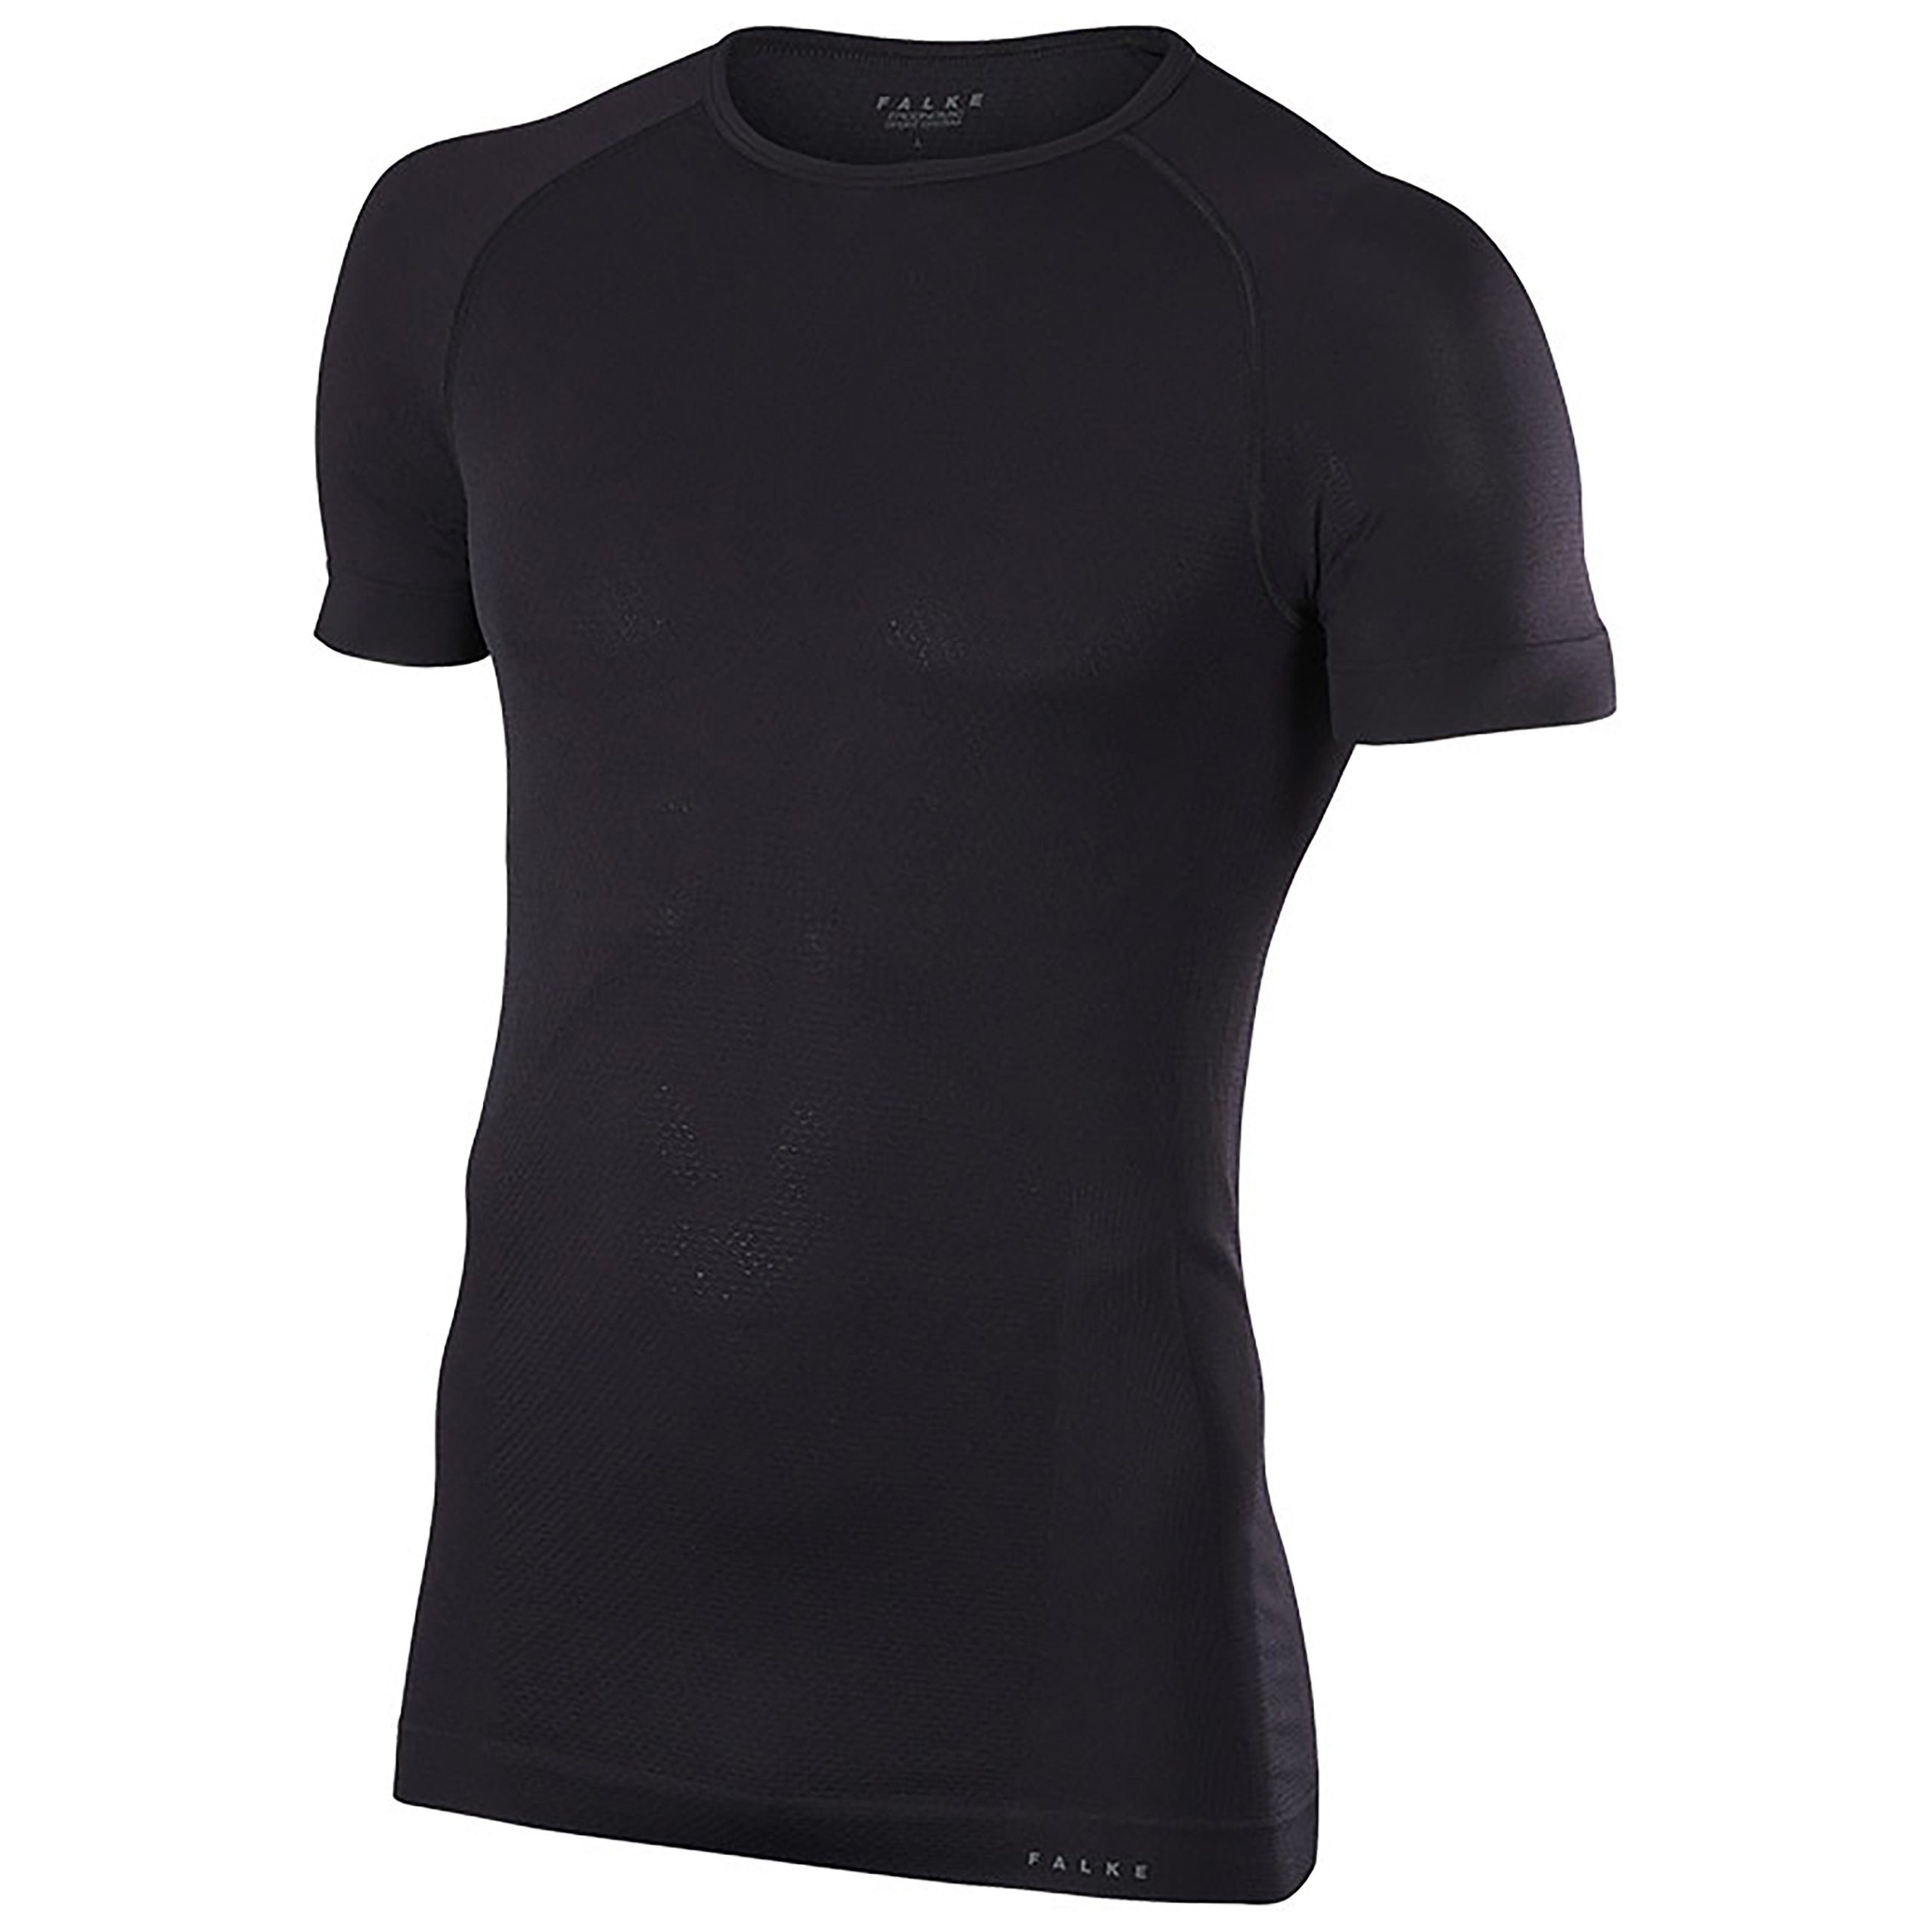 Absolut preiswert FALKE Funktionsshirt Shortsleeved Underwear Shirt Kurzarm-Funktionsshirt black FALKE Cool - Men